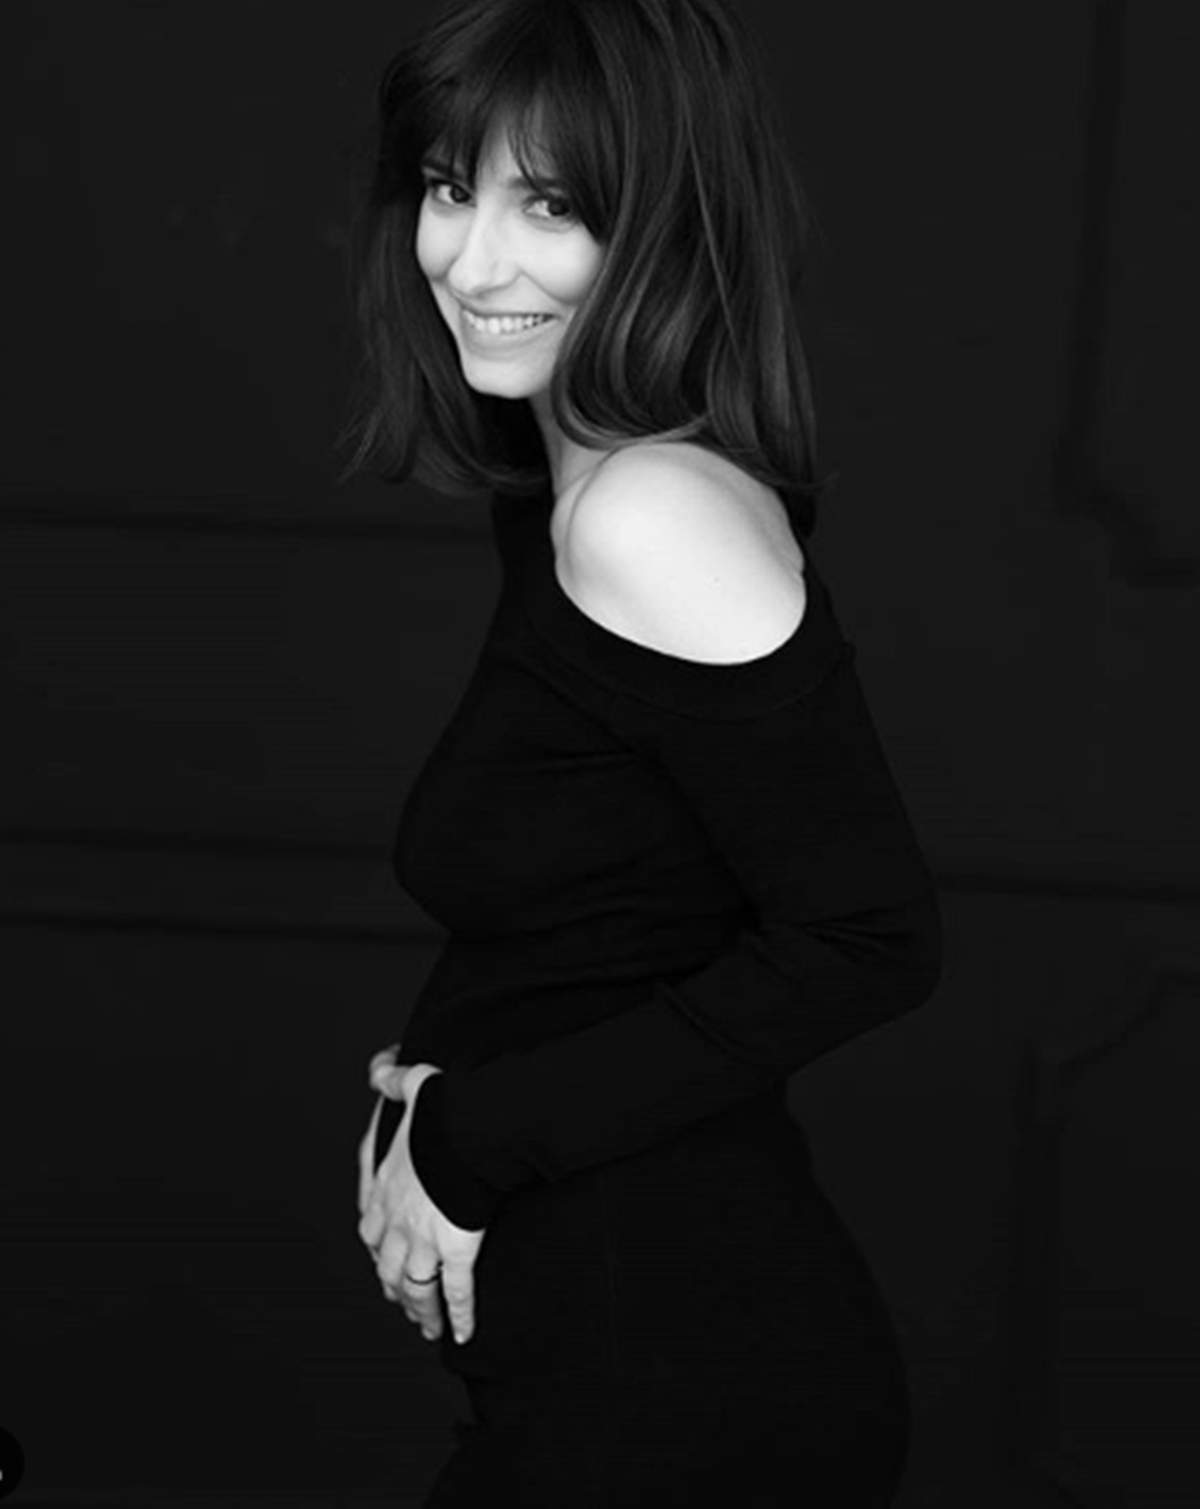 Veste mare pentru Dana Rogoz. În doar o lună va deveni mămică pentru a doua oară. ”Mă bucur de ultimele săptămâni însărcinată”